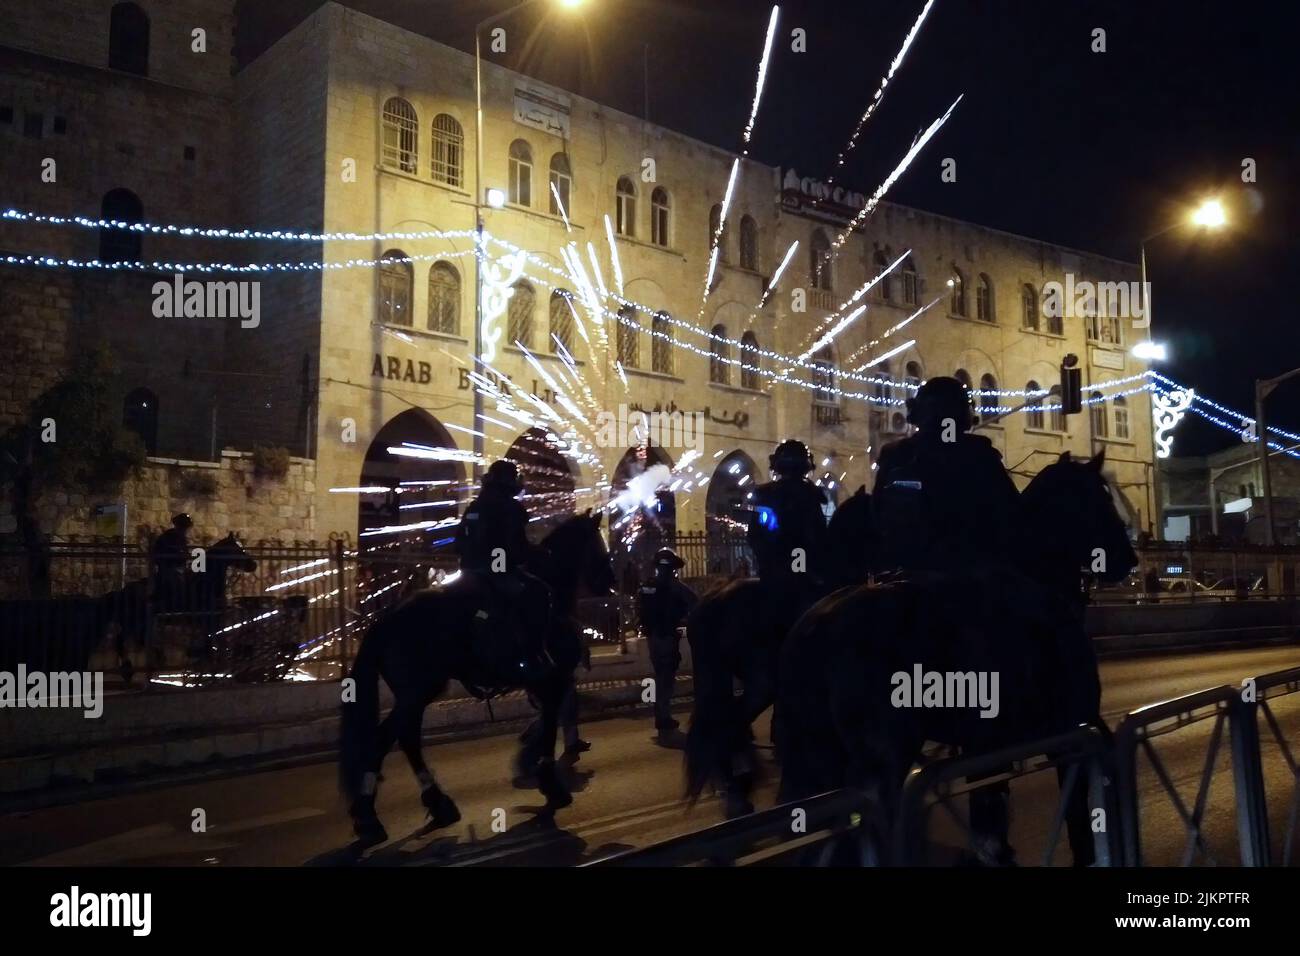 Palästinenser feuern Feuerwerkskörper auf israelische Polizisten, als palästinensische Randalierer am 09. Mai 2021 in Jerusalem, Israel, in der Sultan Suleiman Straße in der Nähe des Damaskus-Tores in Ostjerusalem mit der israelischen Polizei zusammenstoßen. In den letzten Nächten brachen gewalttätige Zusammenstöße zwischen Palästinensern und Sicherheitskräften außerhalb der Altstadt Jerusalems aus, inmitten wachsender Wut über die mögliche Vertreibung von Palästinensern aus Häusern auf Land, die von jüdischen Siedlern im Stadtteil Sheikh Jarrah beansprucht wurden. Stockfoto